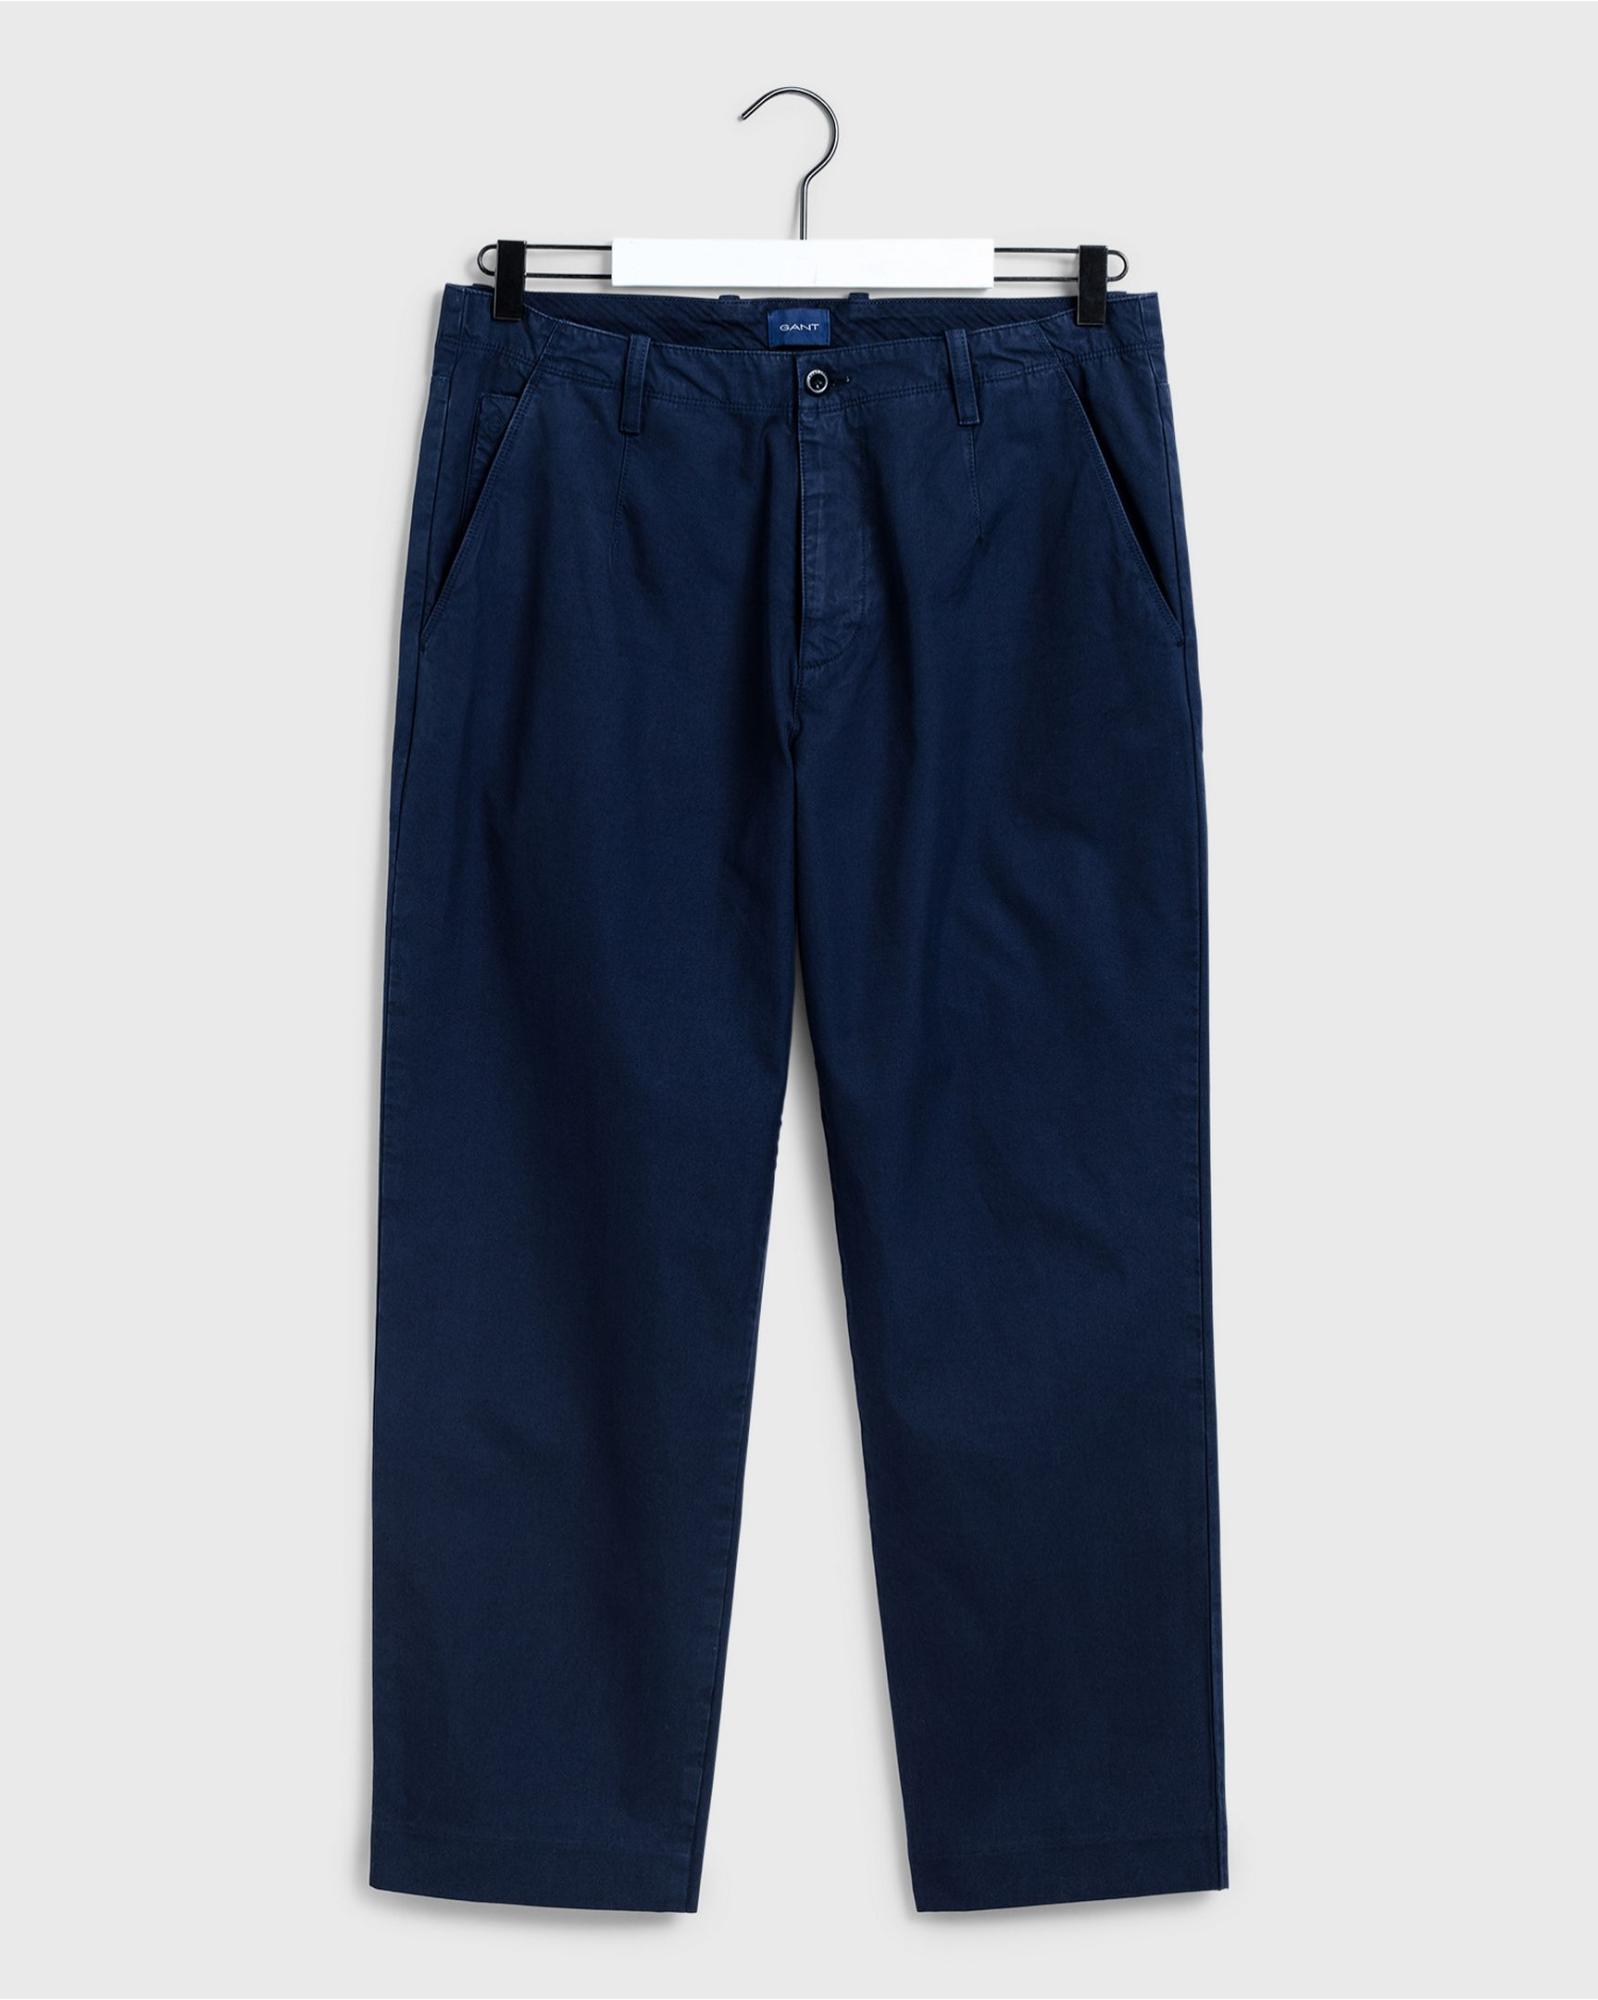 Мужские брюки чинос Gant, синие, цвет синий, размер 33